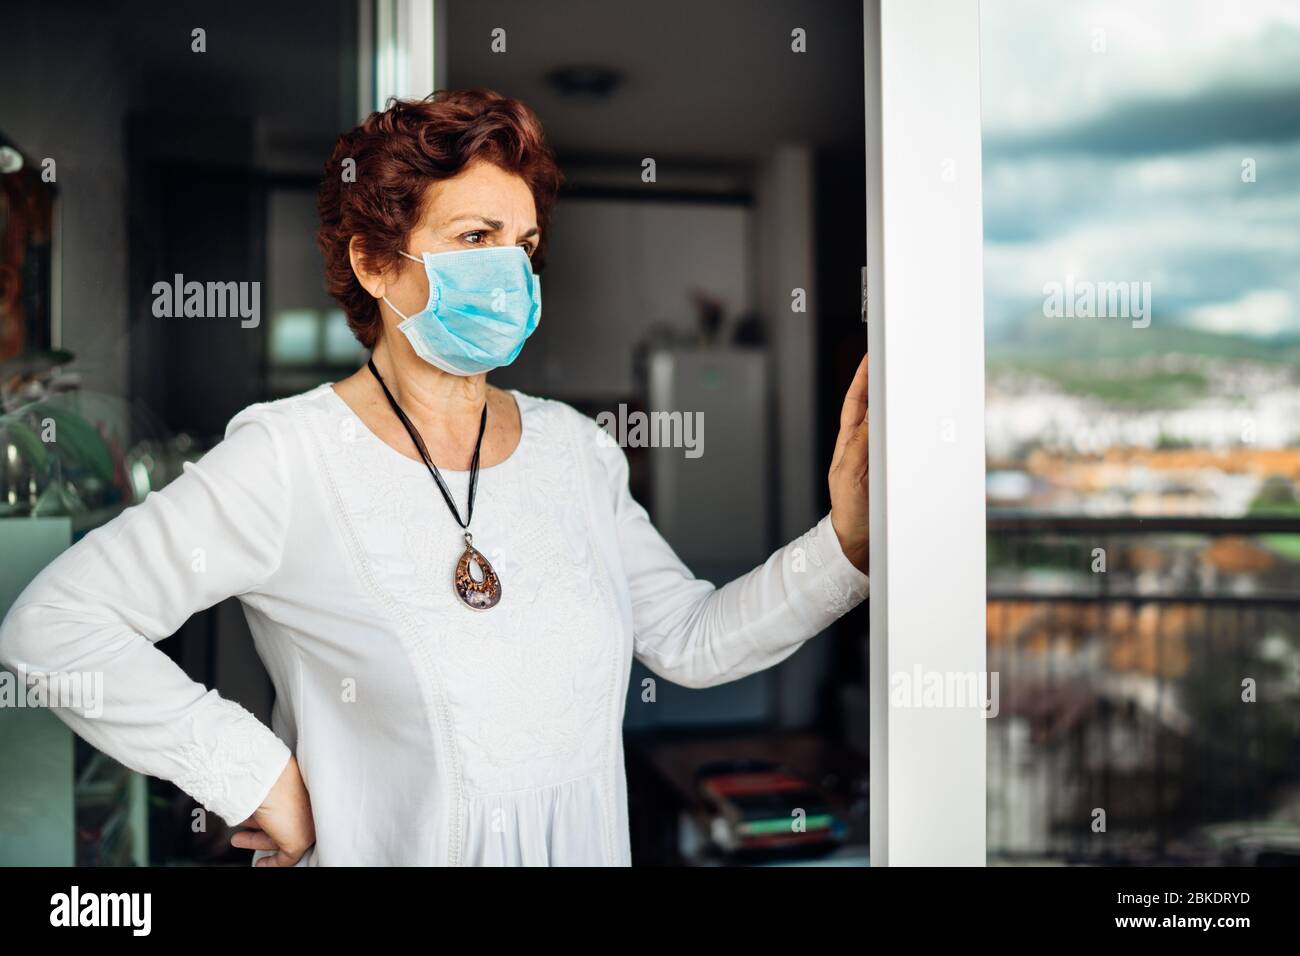 Anziani anziani donna triste a casa, indossare maschera sul balcone window.Coronavirus COVID-19 malattia epidemia infezione Risk.Lockdown socializzazione restrictio Foto Stock